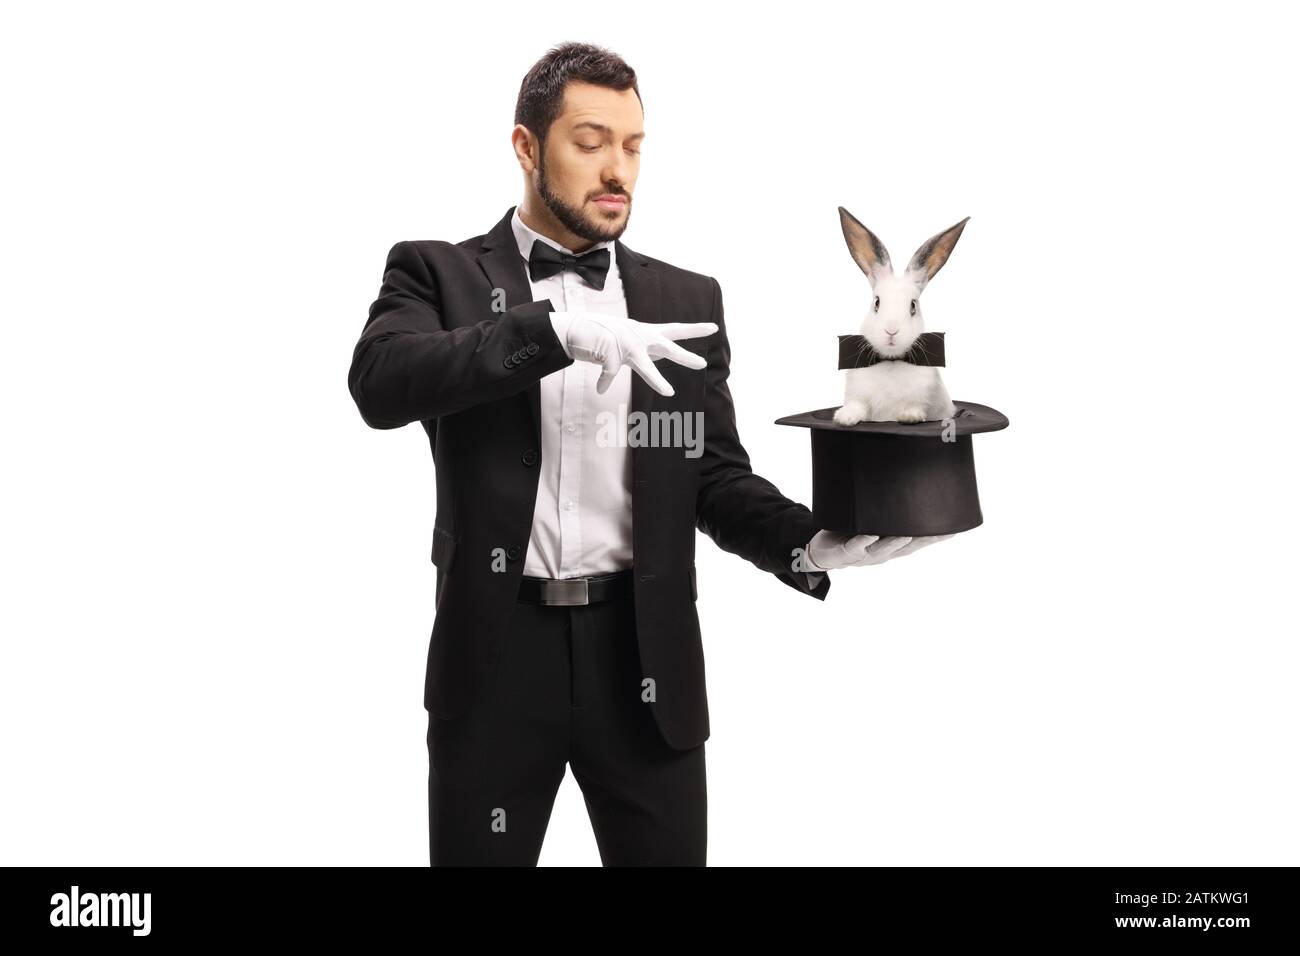 Junger männlicher Zauberer, der einen Zaubertrick mit einem Kaninchen in einem auf weißem Hintergrund isolierten Hut macht Stockfoto